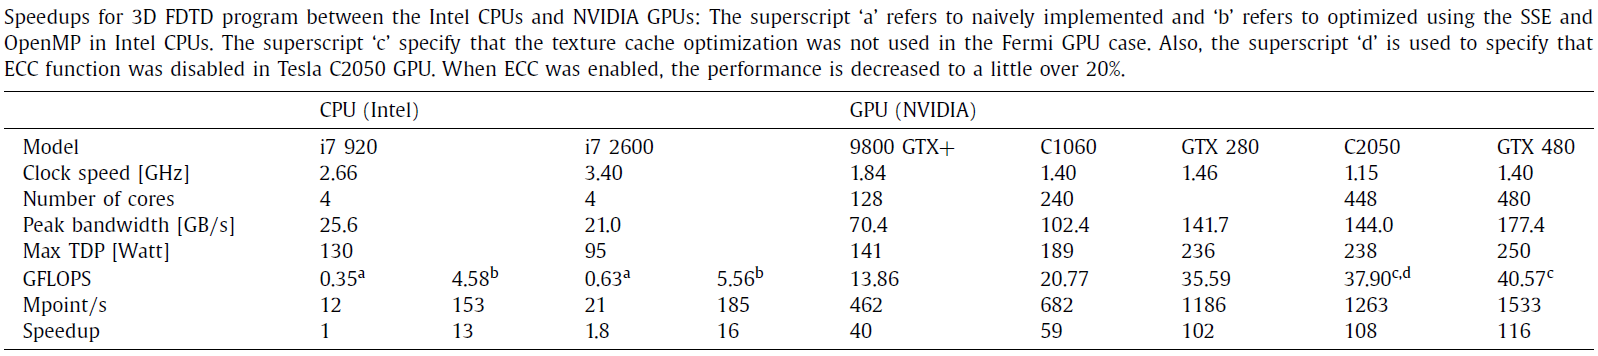 최신 CPU, GPU에서 본 연구진이 개발한 FDTD 프로그램의 성능 비교